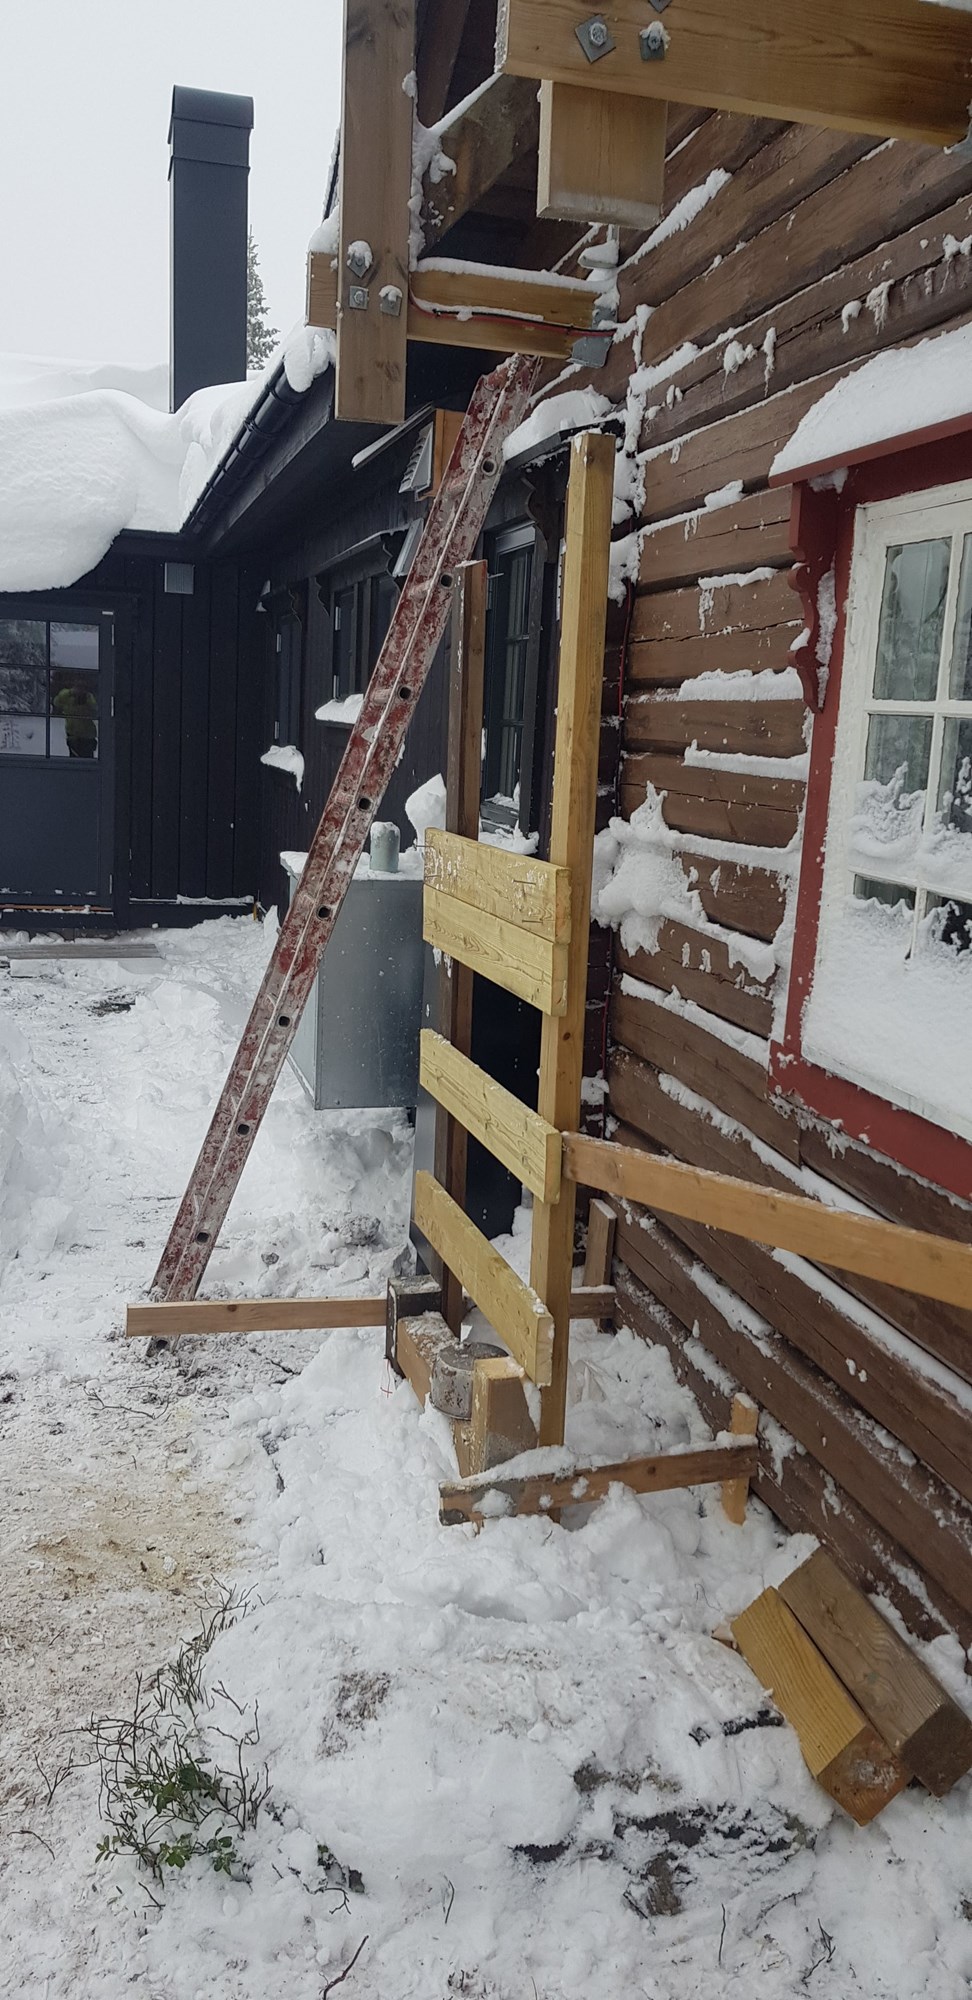 Varmepumpe stativ på hytte med mye snø - 20221125_115359.jpg - Qhans